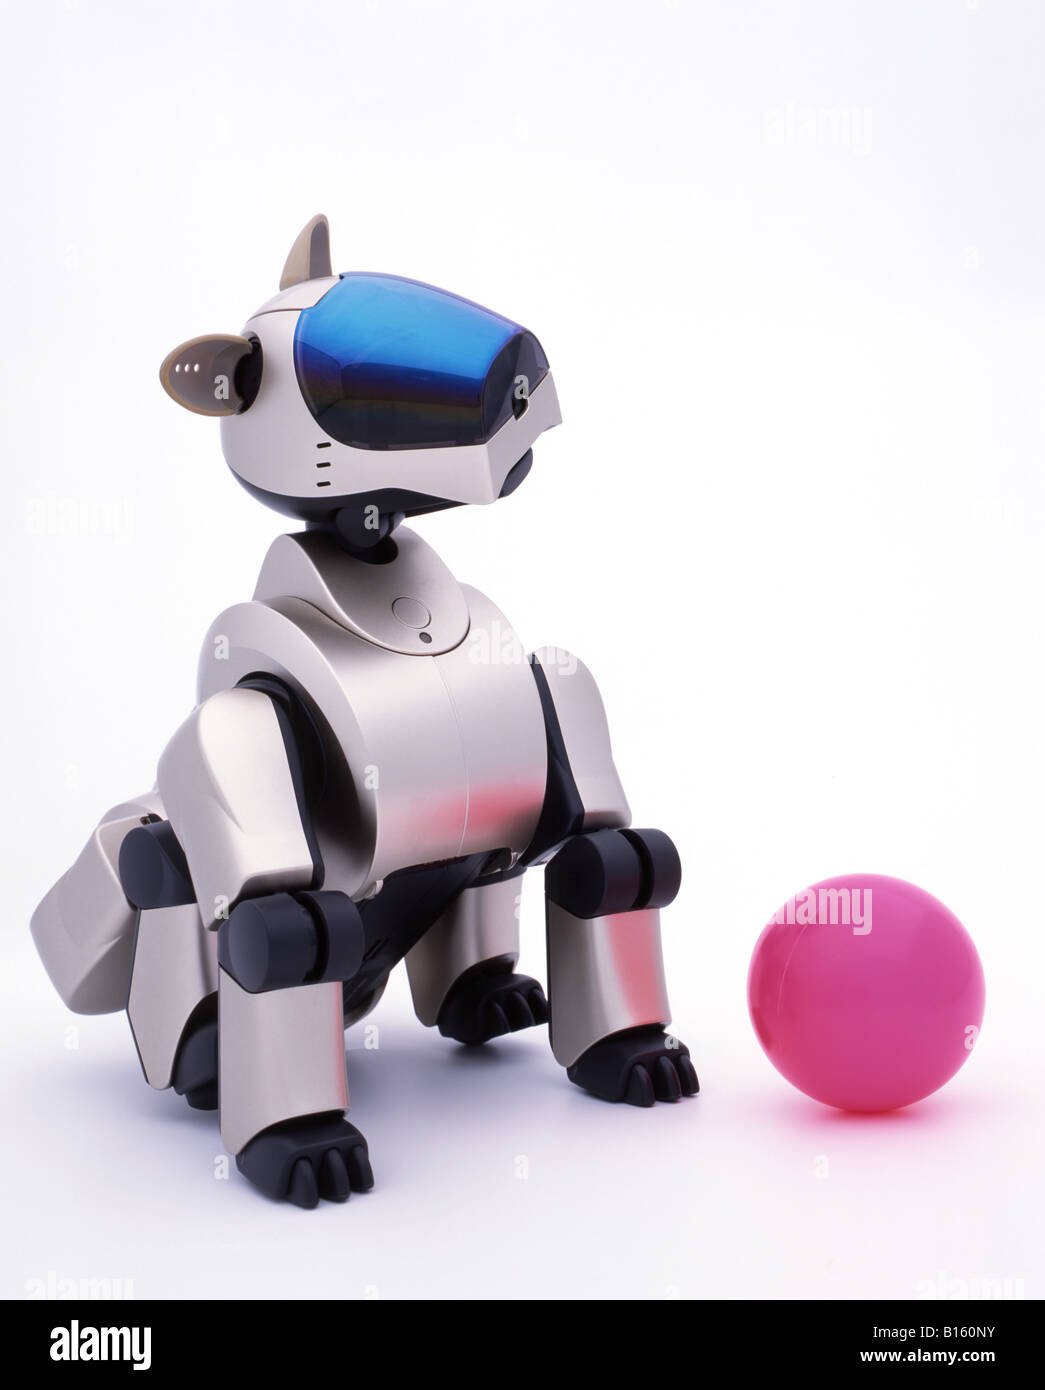 Immagini Stock - Cane Robot Con Osso Ai. Image 206367459